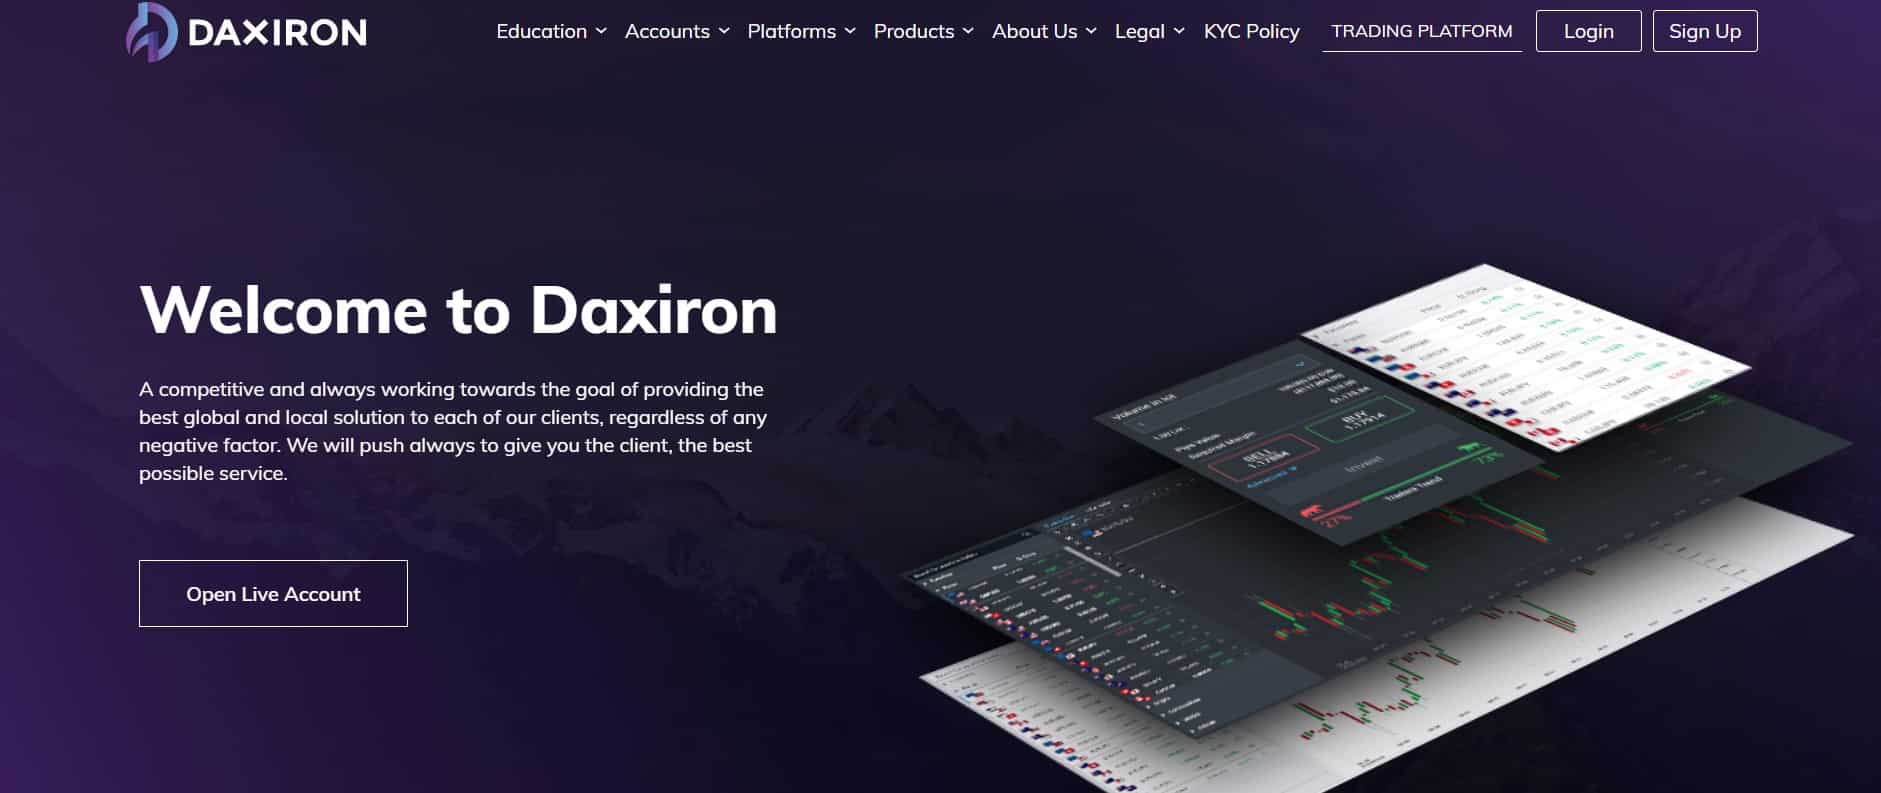 Daxiron website